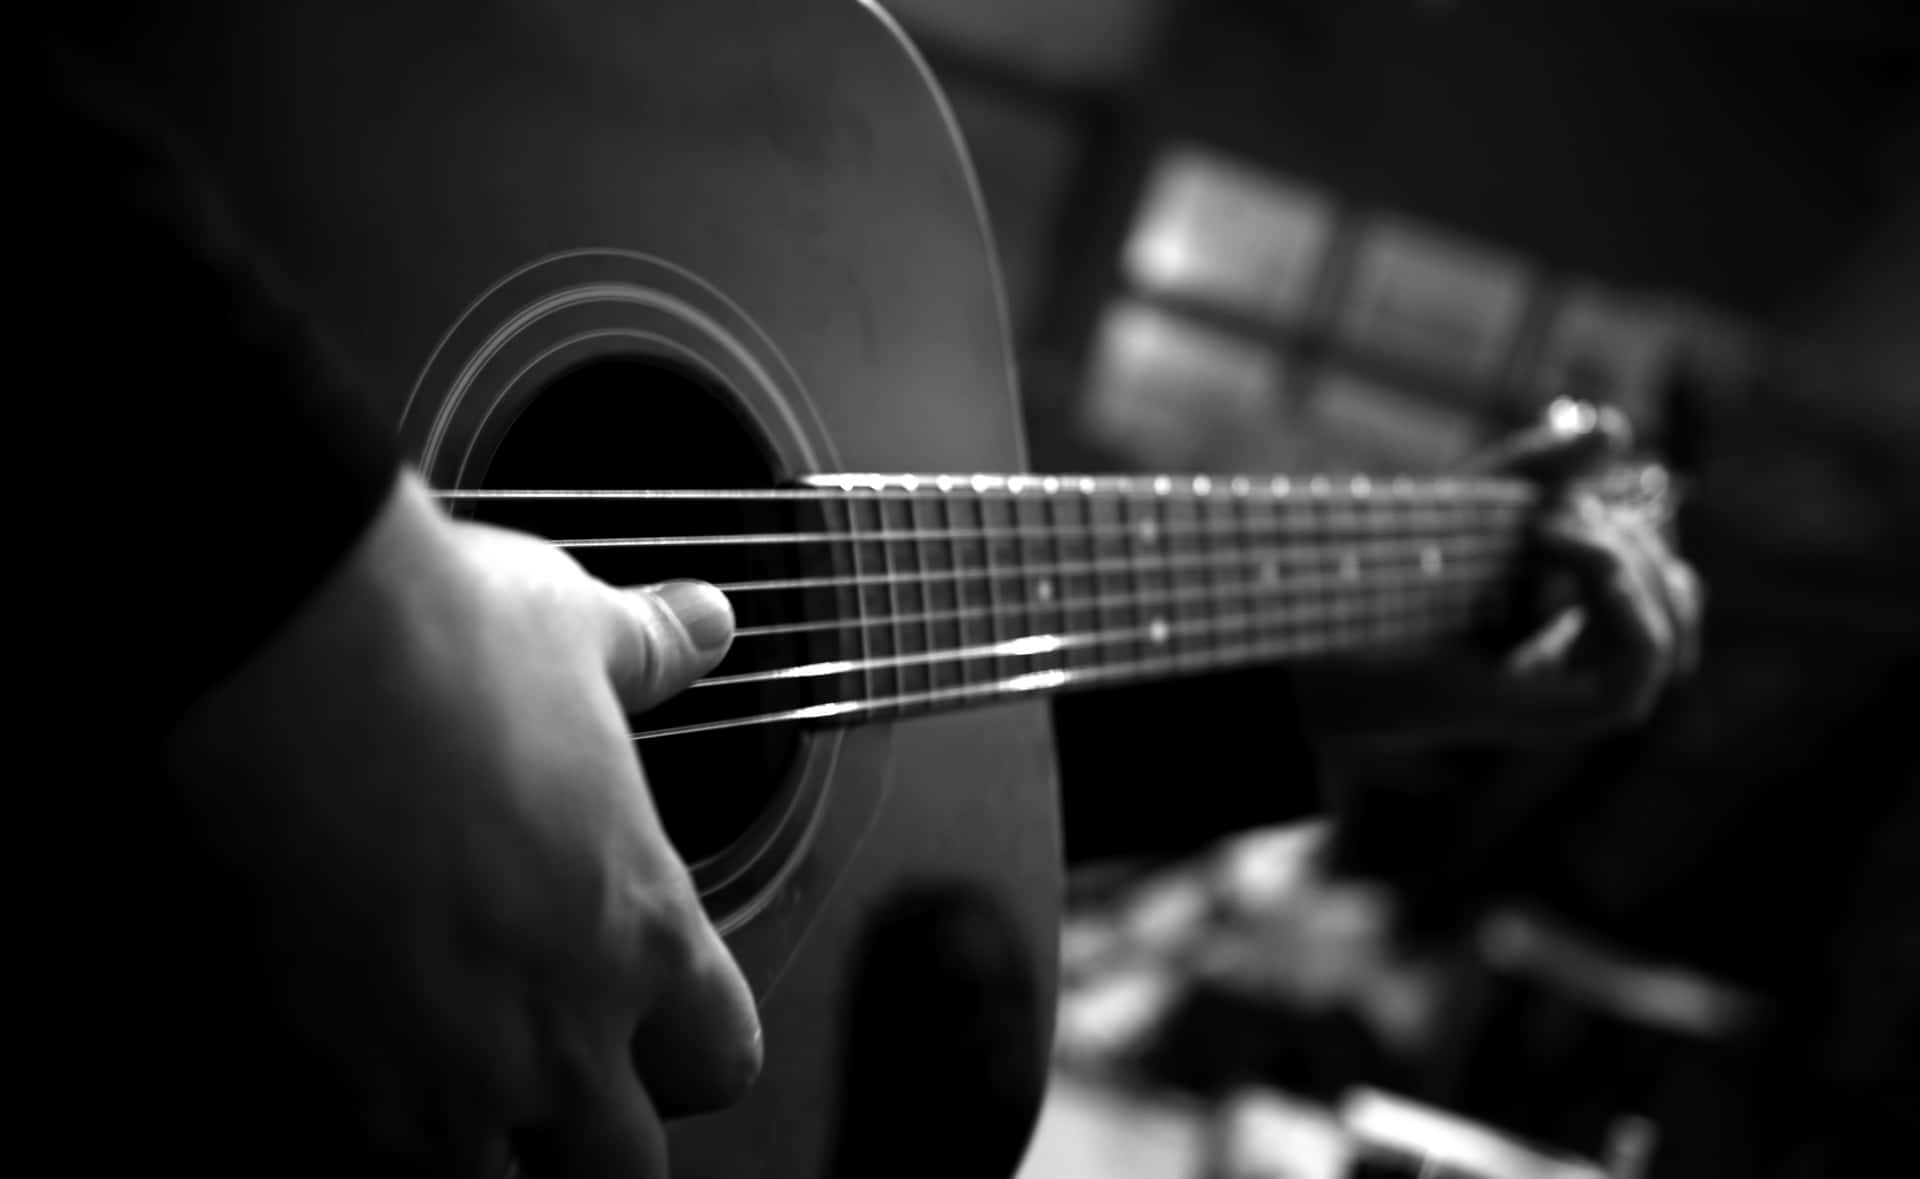 Personatocando Un Instrumento Musical: Una Imagen En Blanco Y Negro De Una Guitarra.